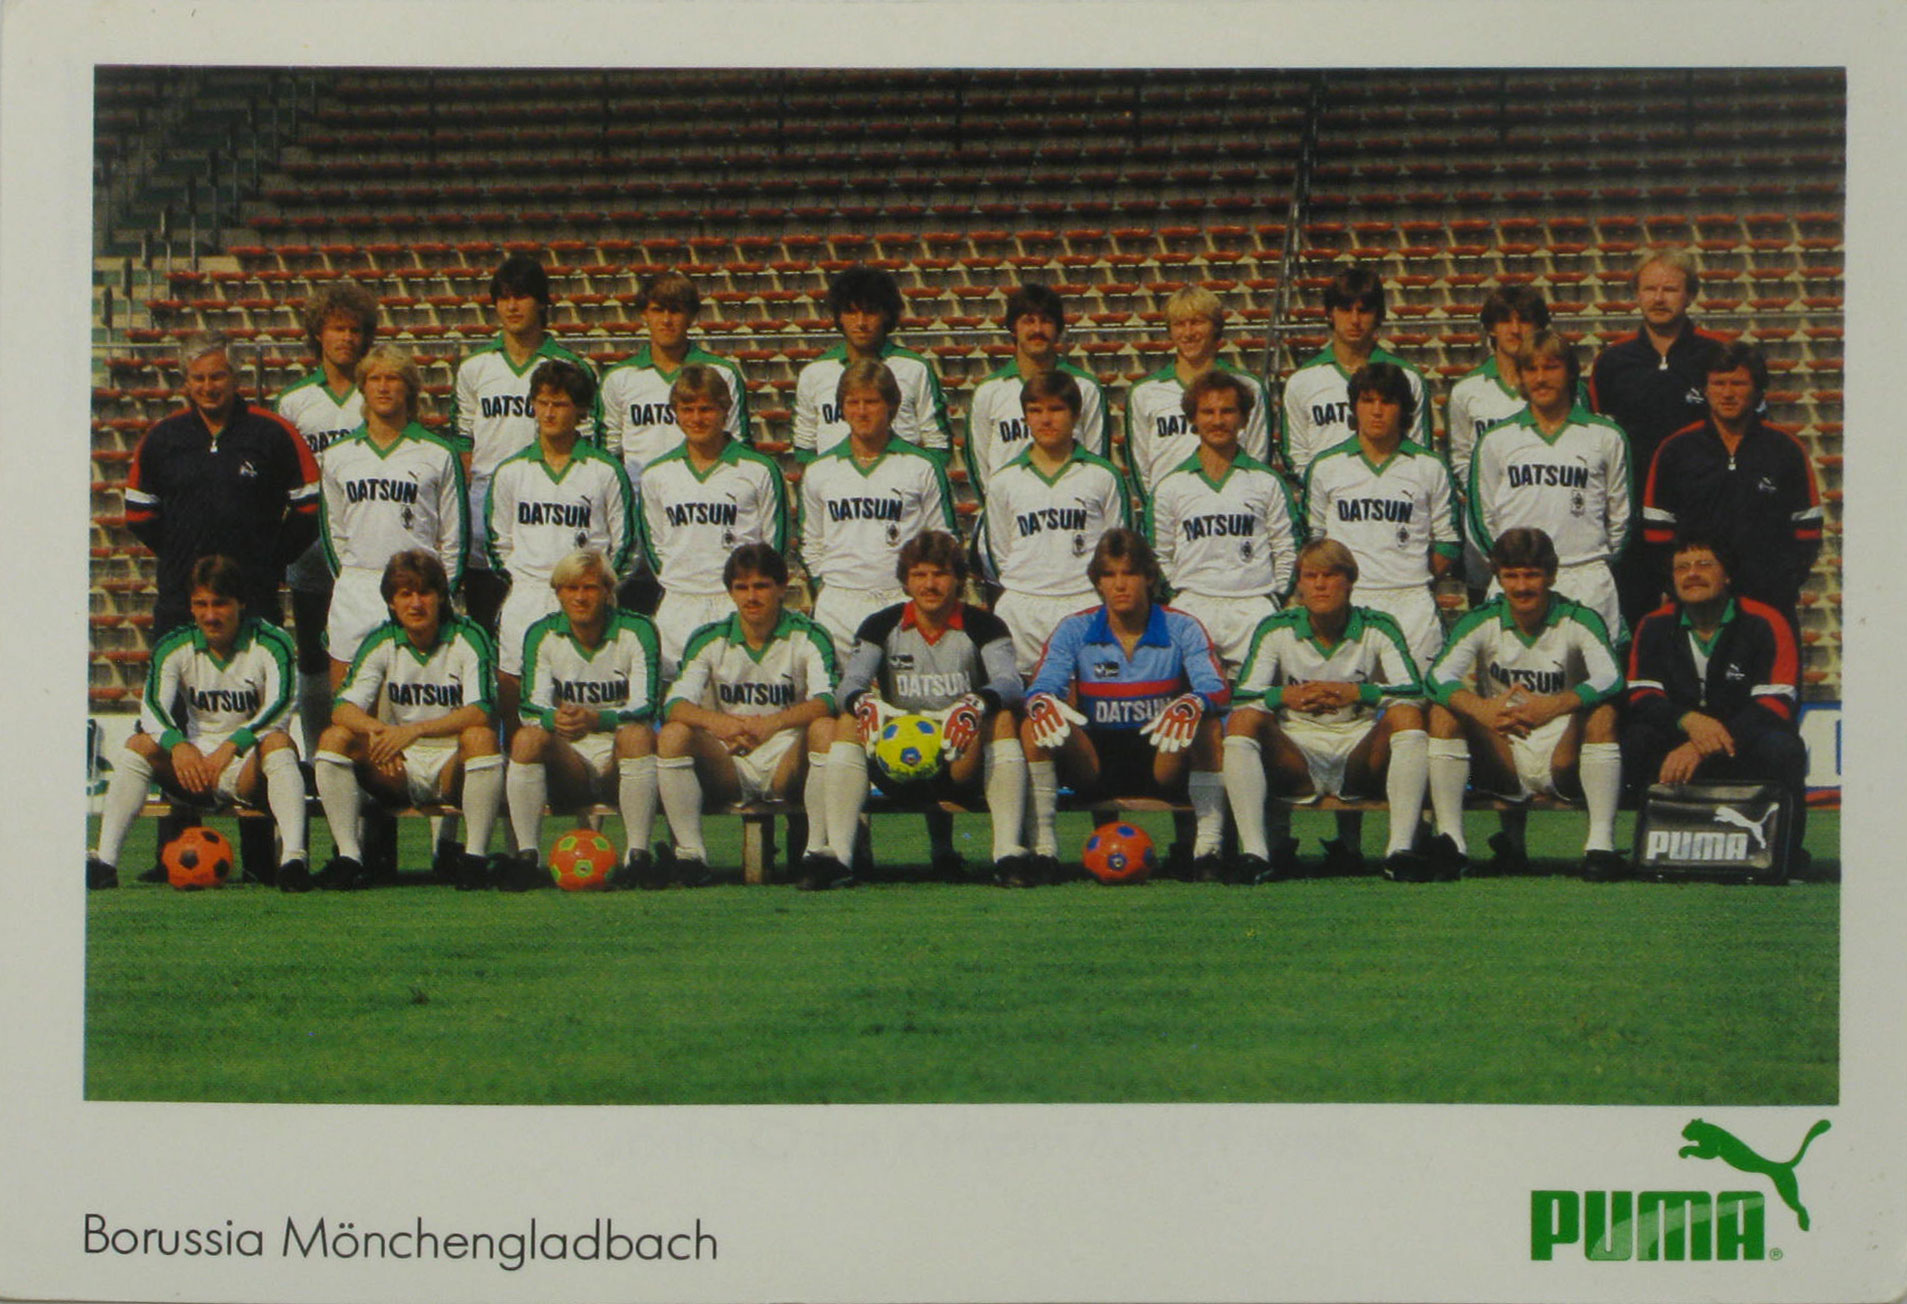   Mannschaftskarte Borussia Mönchengladbach Saison 1982/83 